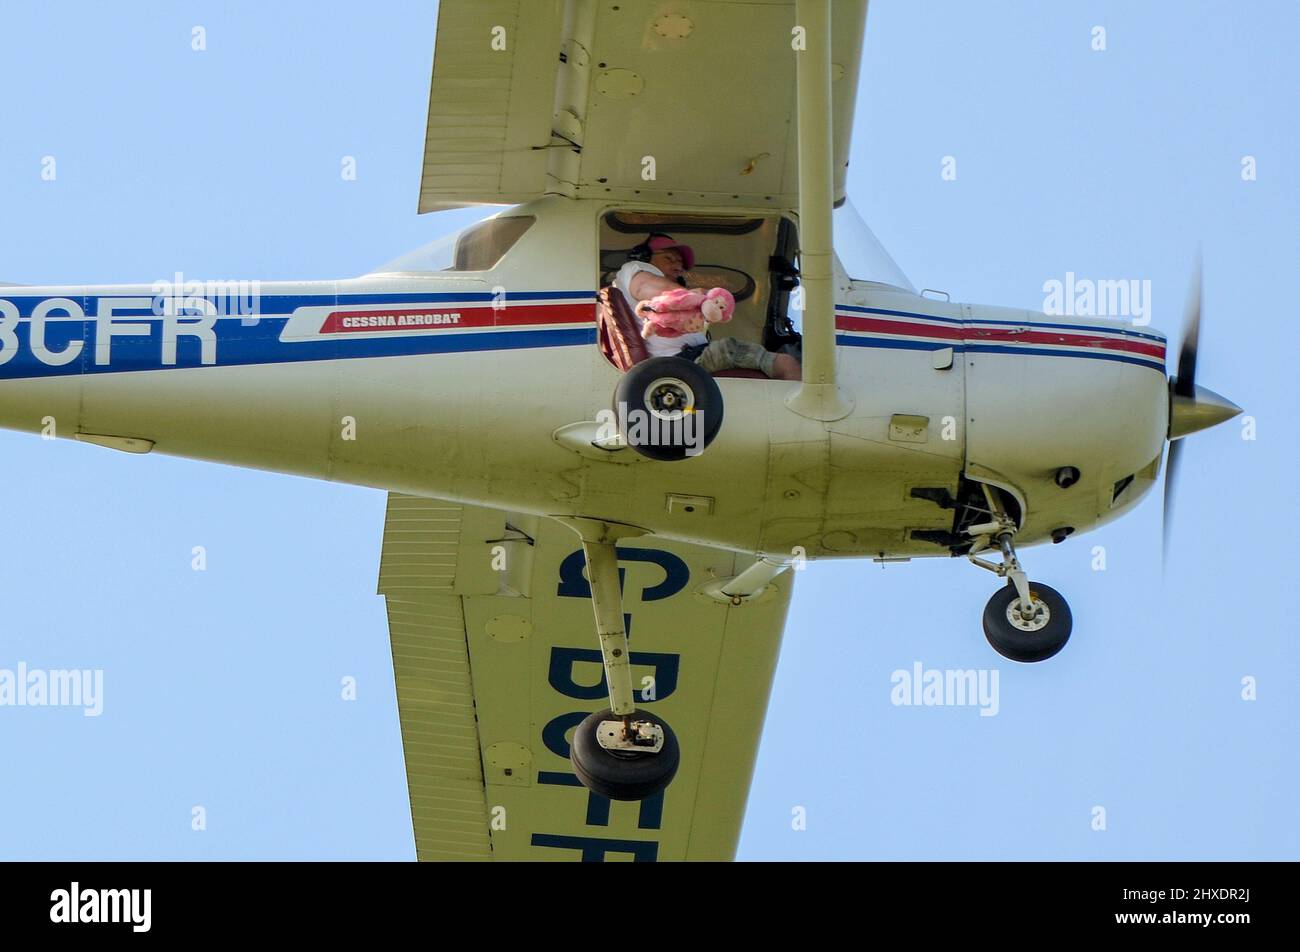 Humorvolle Luft Ereignis plushy Teddy Spielzeug Fallschirm Landung Genauigkeit Wettbewerb. Spielzeug mit Fallschirm, der aus einem Cessna-Flugzeug fällt, um in der Nähe eines Ziels zu landen Stockfoto